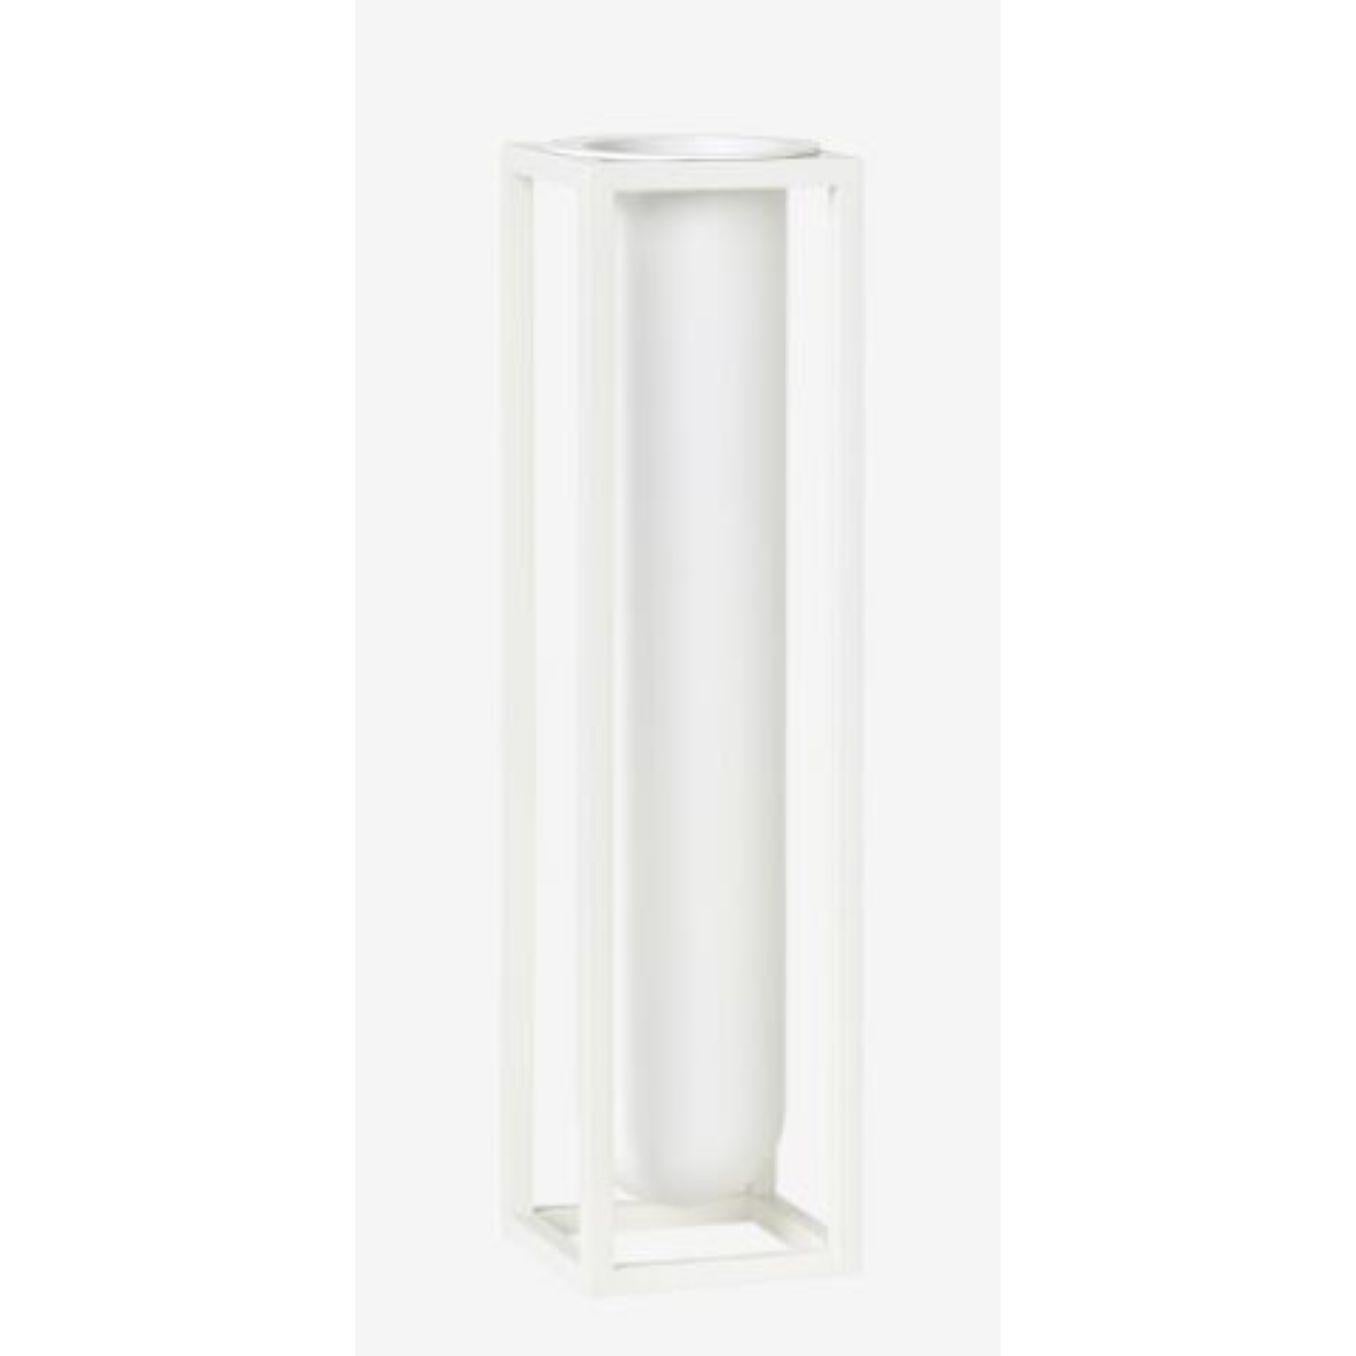 Vase Kubus à flore blanche de Lassen
Dimensions : D 6 x L 6 x H 24 cm 
Matériaux : Métal 
Poids : 2.00 kg

Lorsque les rayons du soleil glissent à travers les fenêtres, invitez la nature à l'intérieur en plaçant une fleur élégante dans le vase Kubus